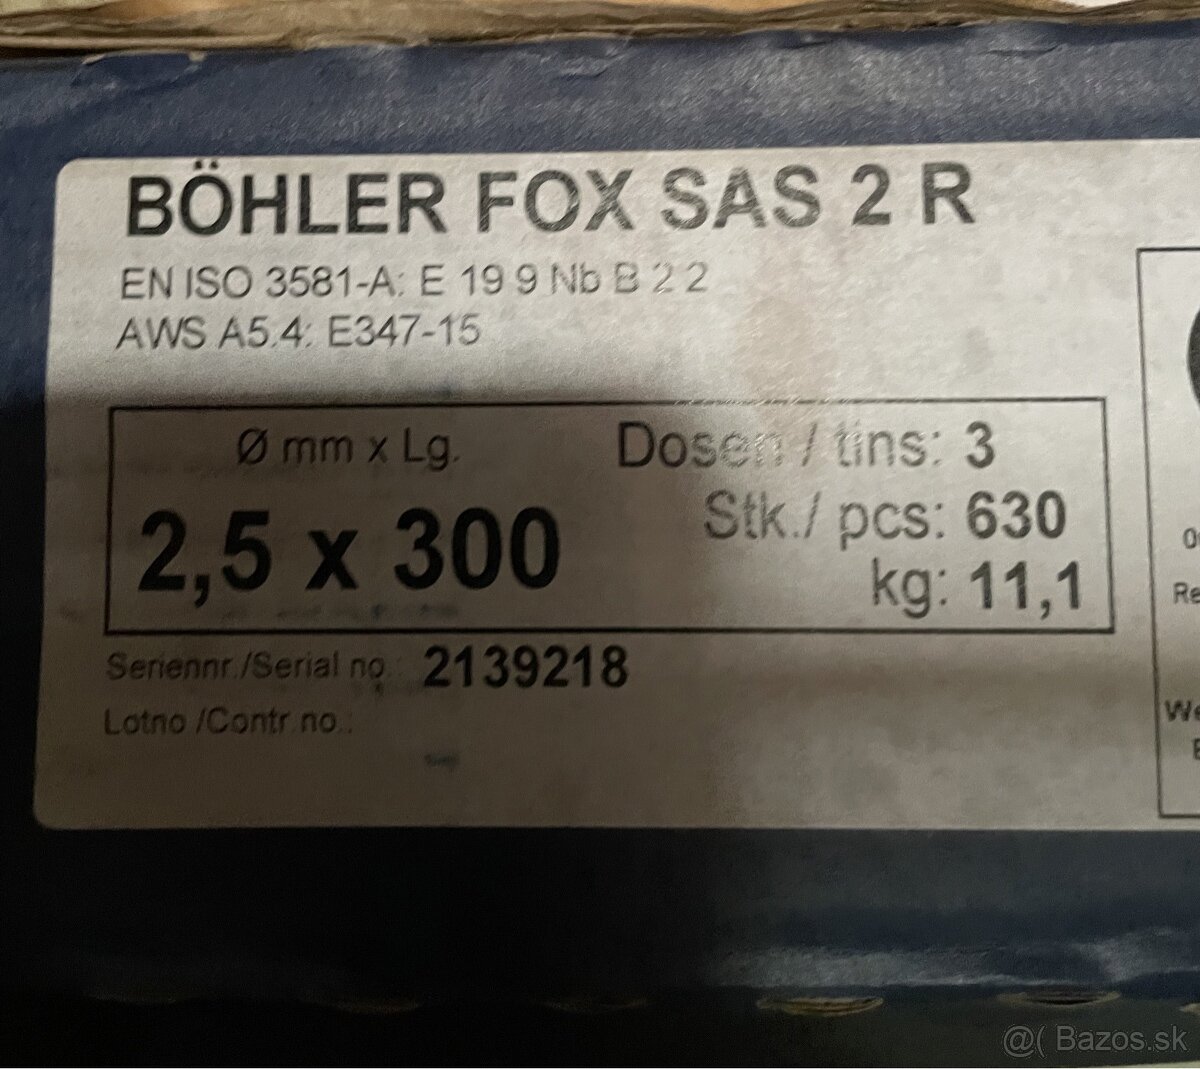 Predam elektrody nerez bohler fox SaS 2 R 2.5mm